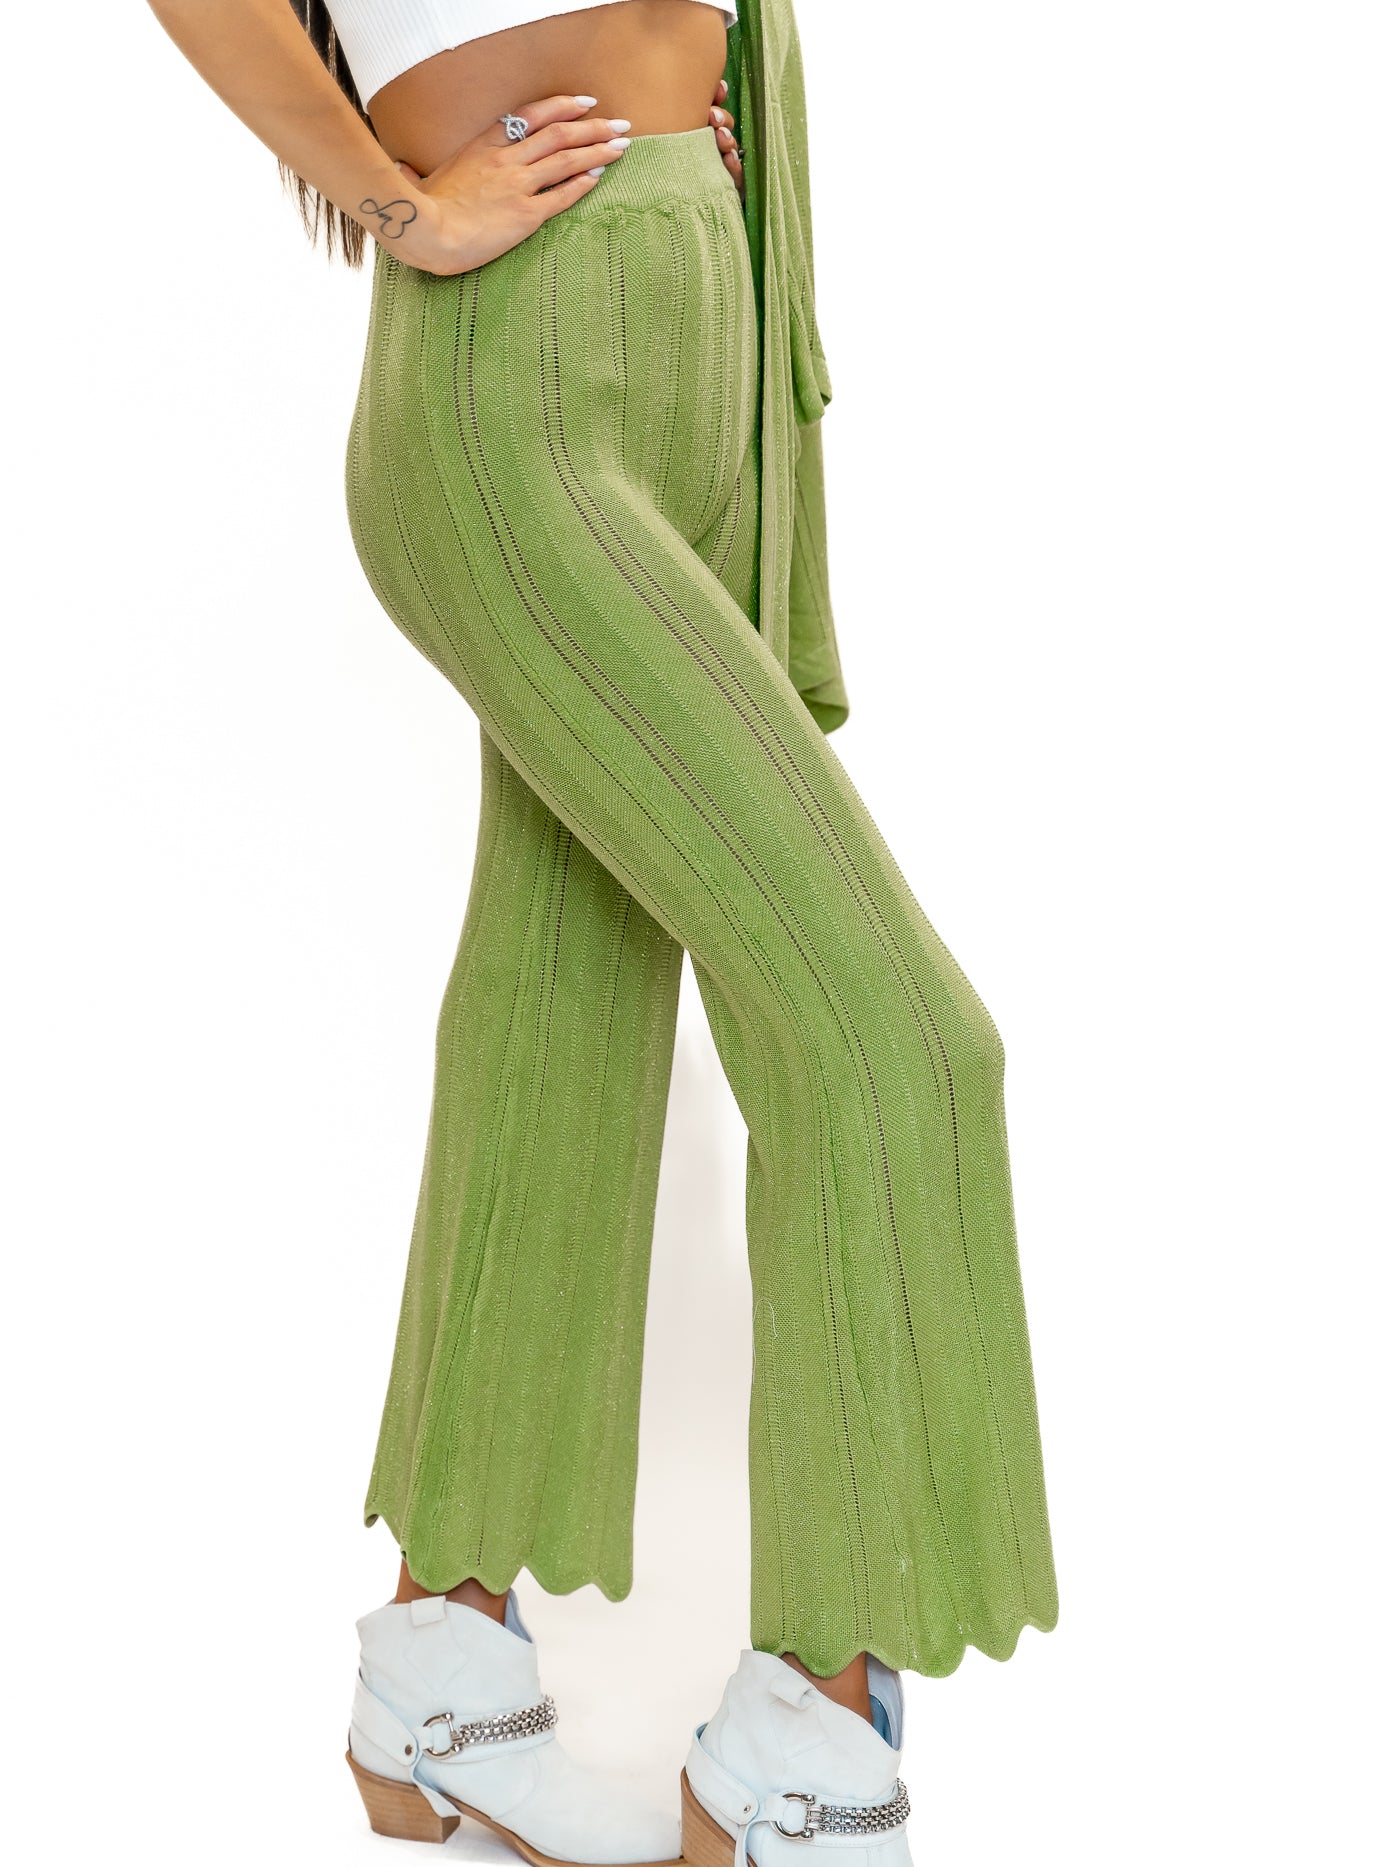 Compleu femei pantaloni și cardigan verde